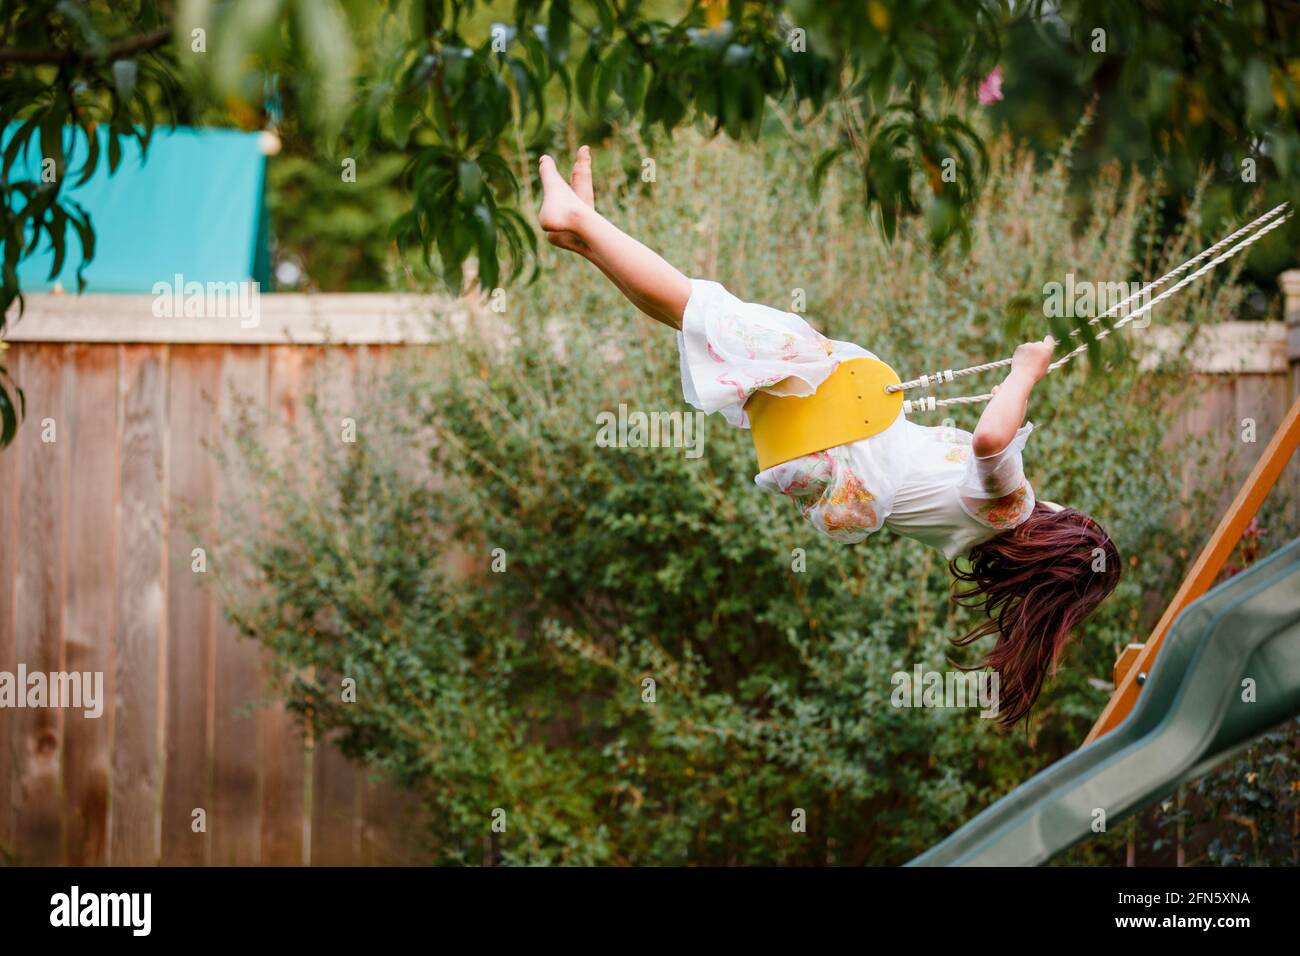 un bambino a piedi nudi oscilla in alto su un playlet in un giardino sul retro Foto Stock